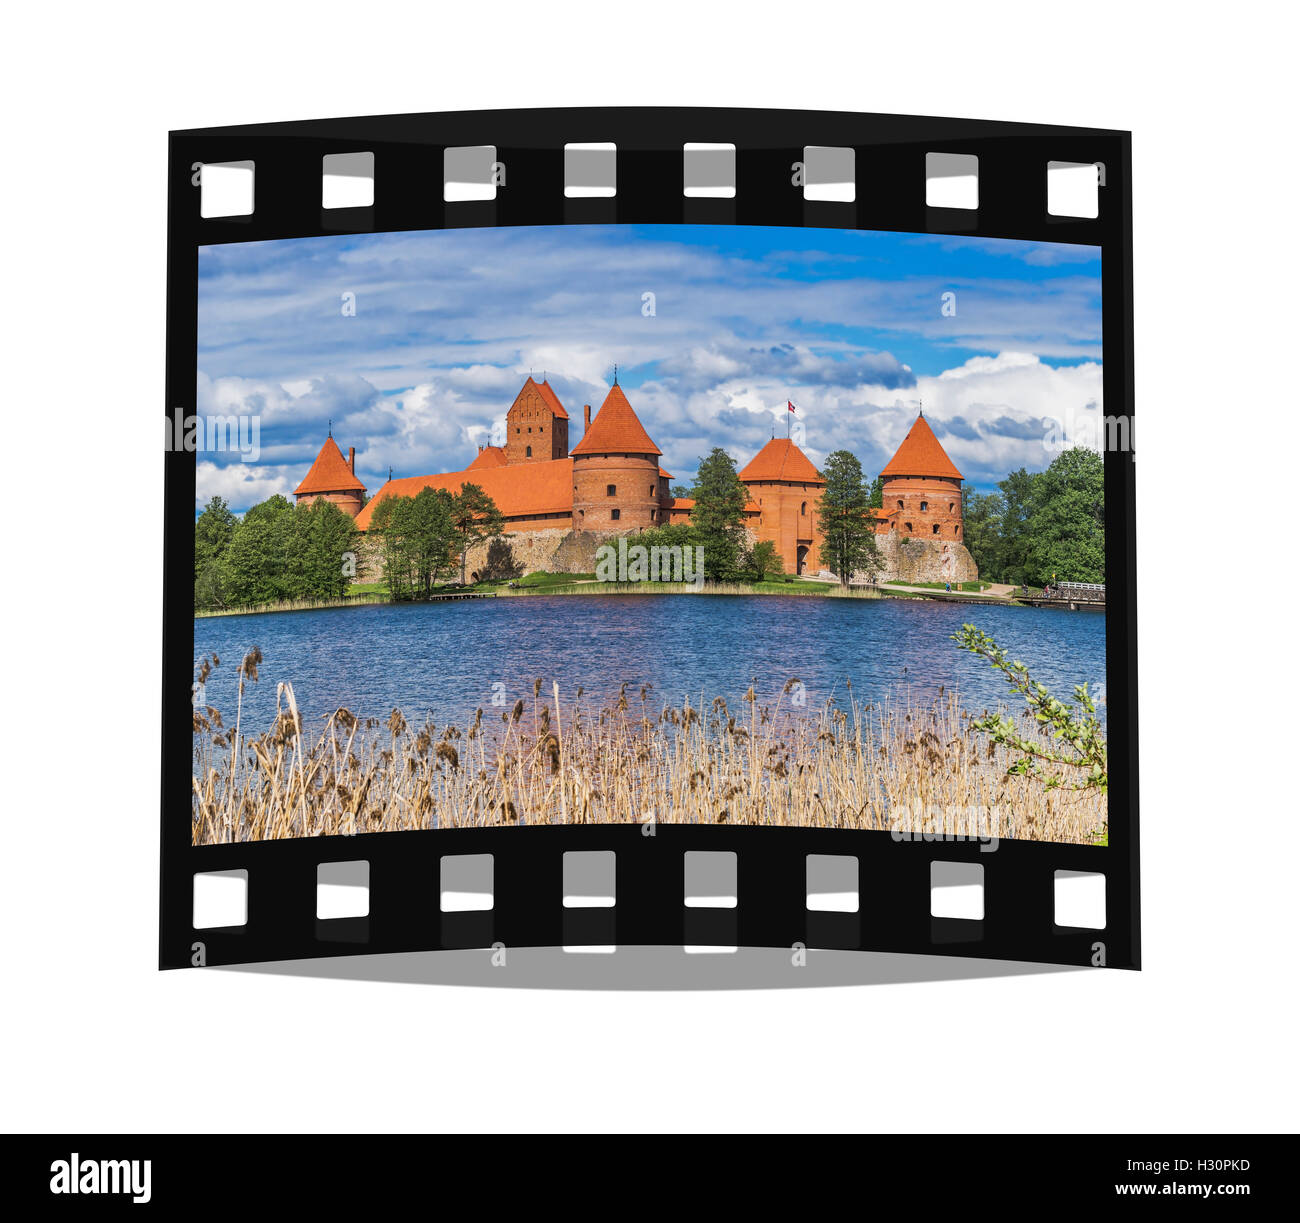 Die Wasserburg Trakai wurde im 14. Jahrhundert errichtet und befindet sich in der NÃ¤il von Vilnius, Lituanie, Baltikum, Europa Banque D'Images